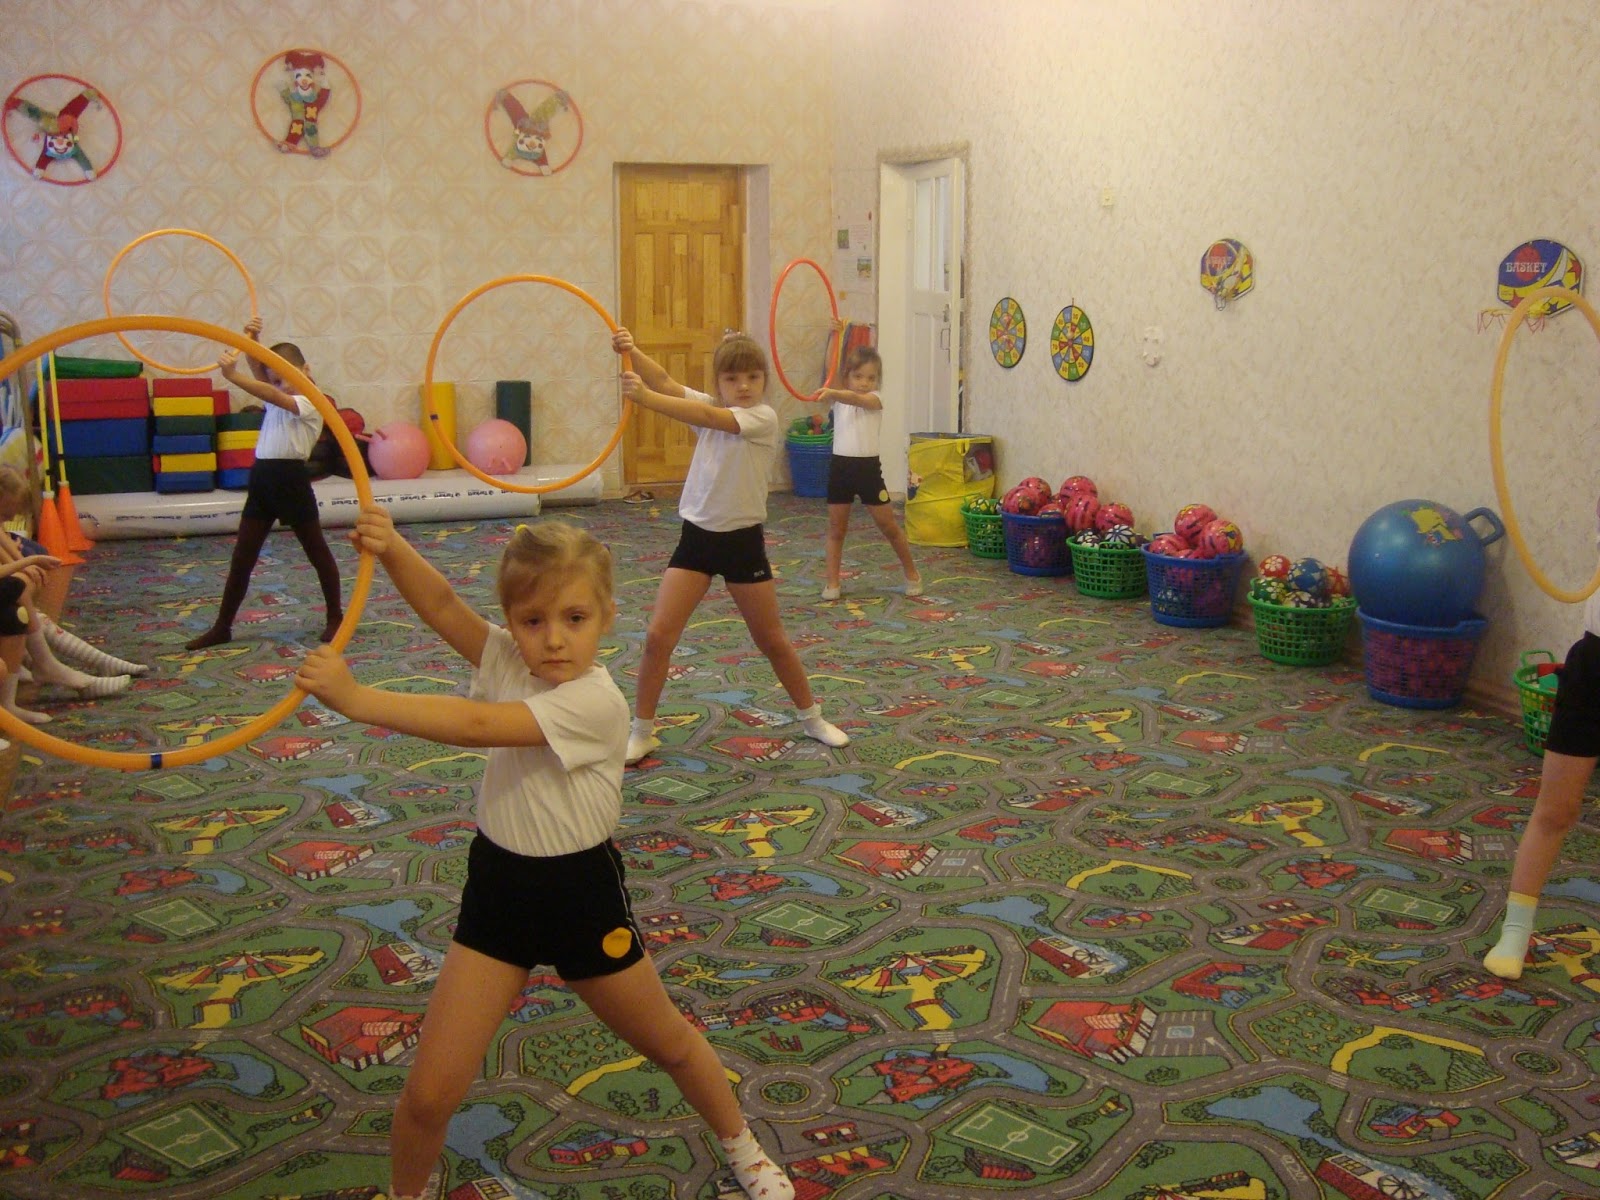 Са-фи-дансе танцевально-игровая гимнастика для детей. Игрогимнастика в детском саду. Са фи дансе в детском саду. Программа са фи дансе для дошкольников.